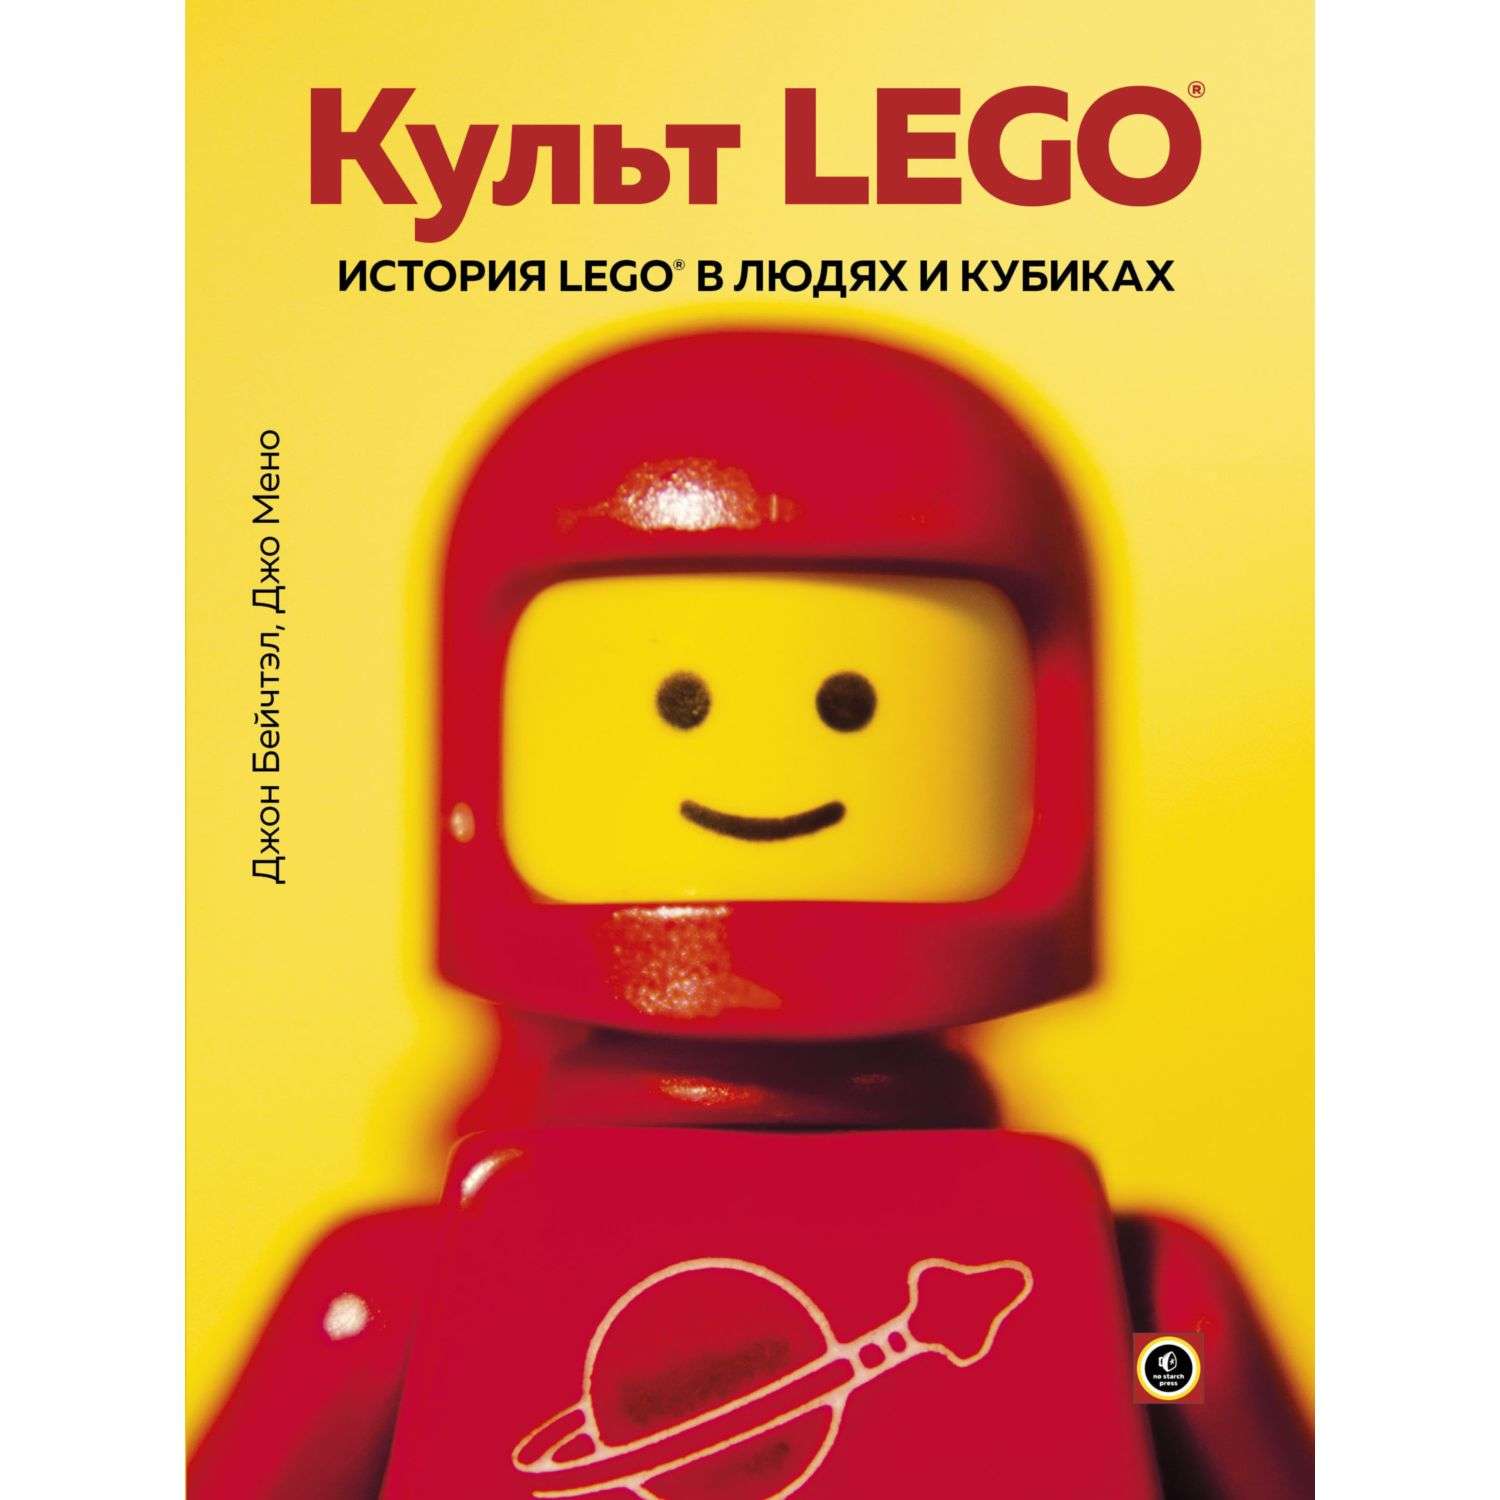 Книга БОМБОРА Культ Lego История Lego в людях и кубиках - фото 2